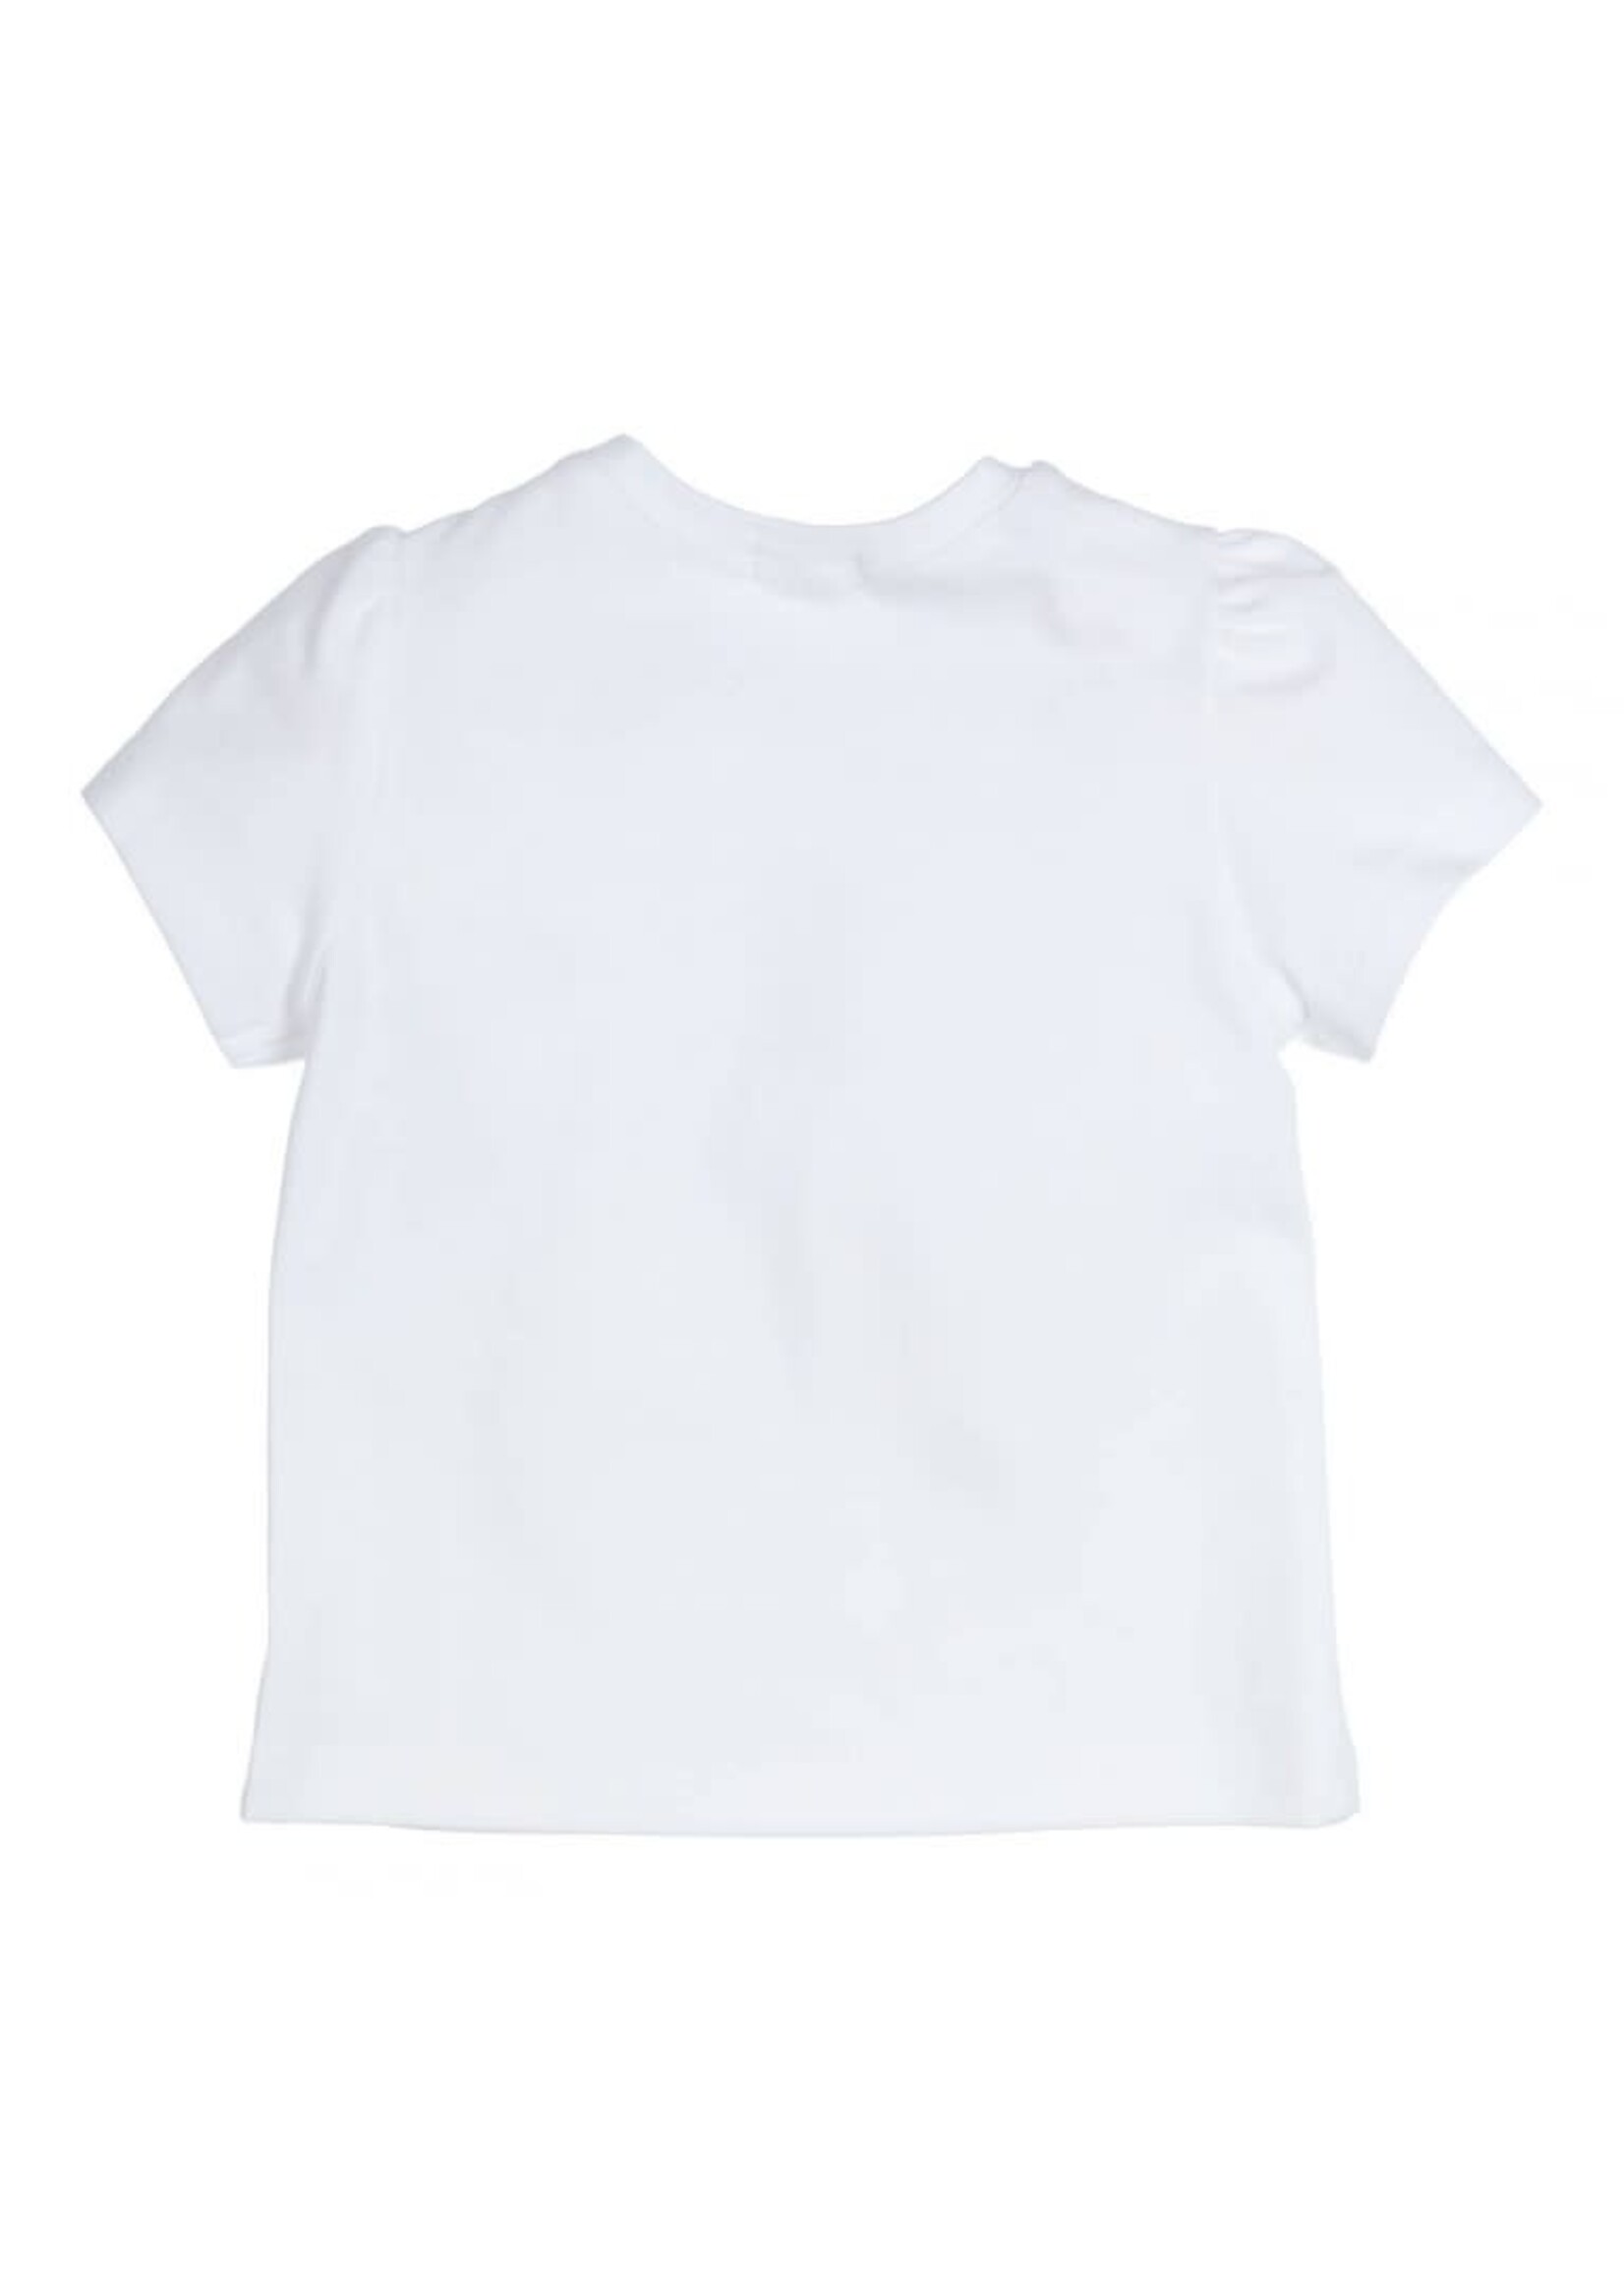 GYMP GYMP T-shirt Aerobic White 353-4236-10